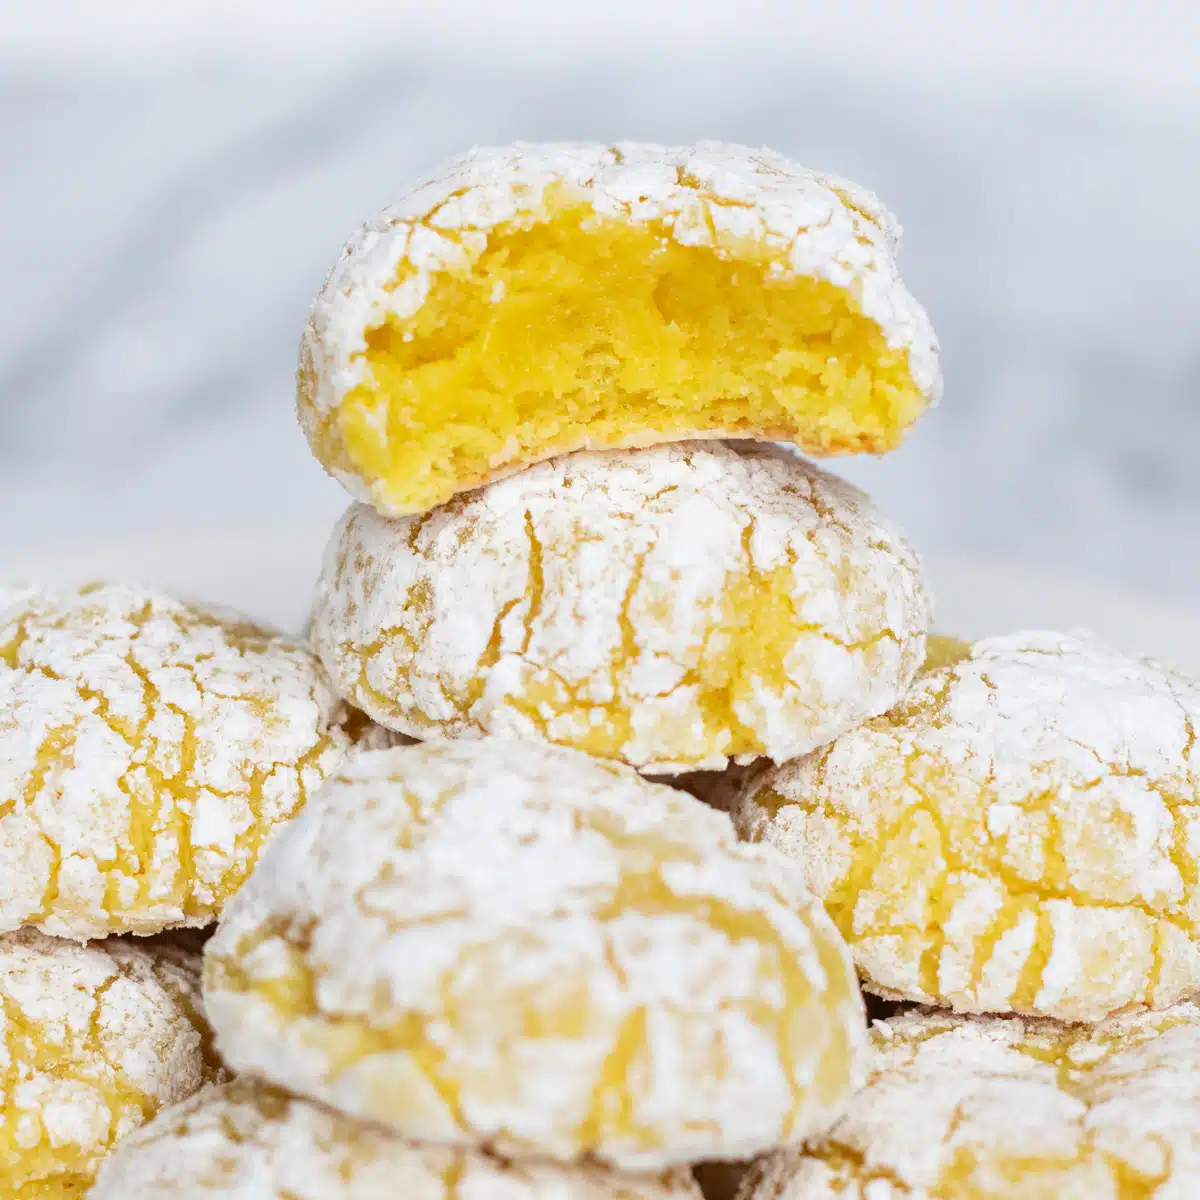 Galletas arrugadas de queso crema y limón súper suaves apiladas con un bocado que muestra el centro amarillo de la galleta superior.